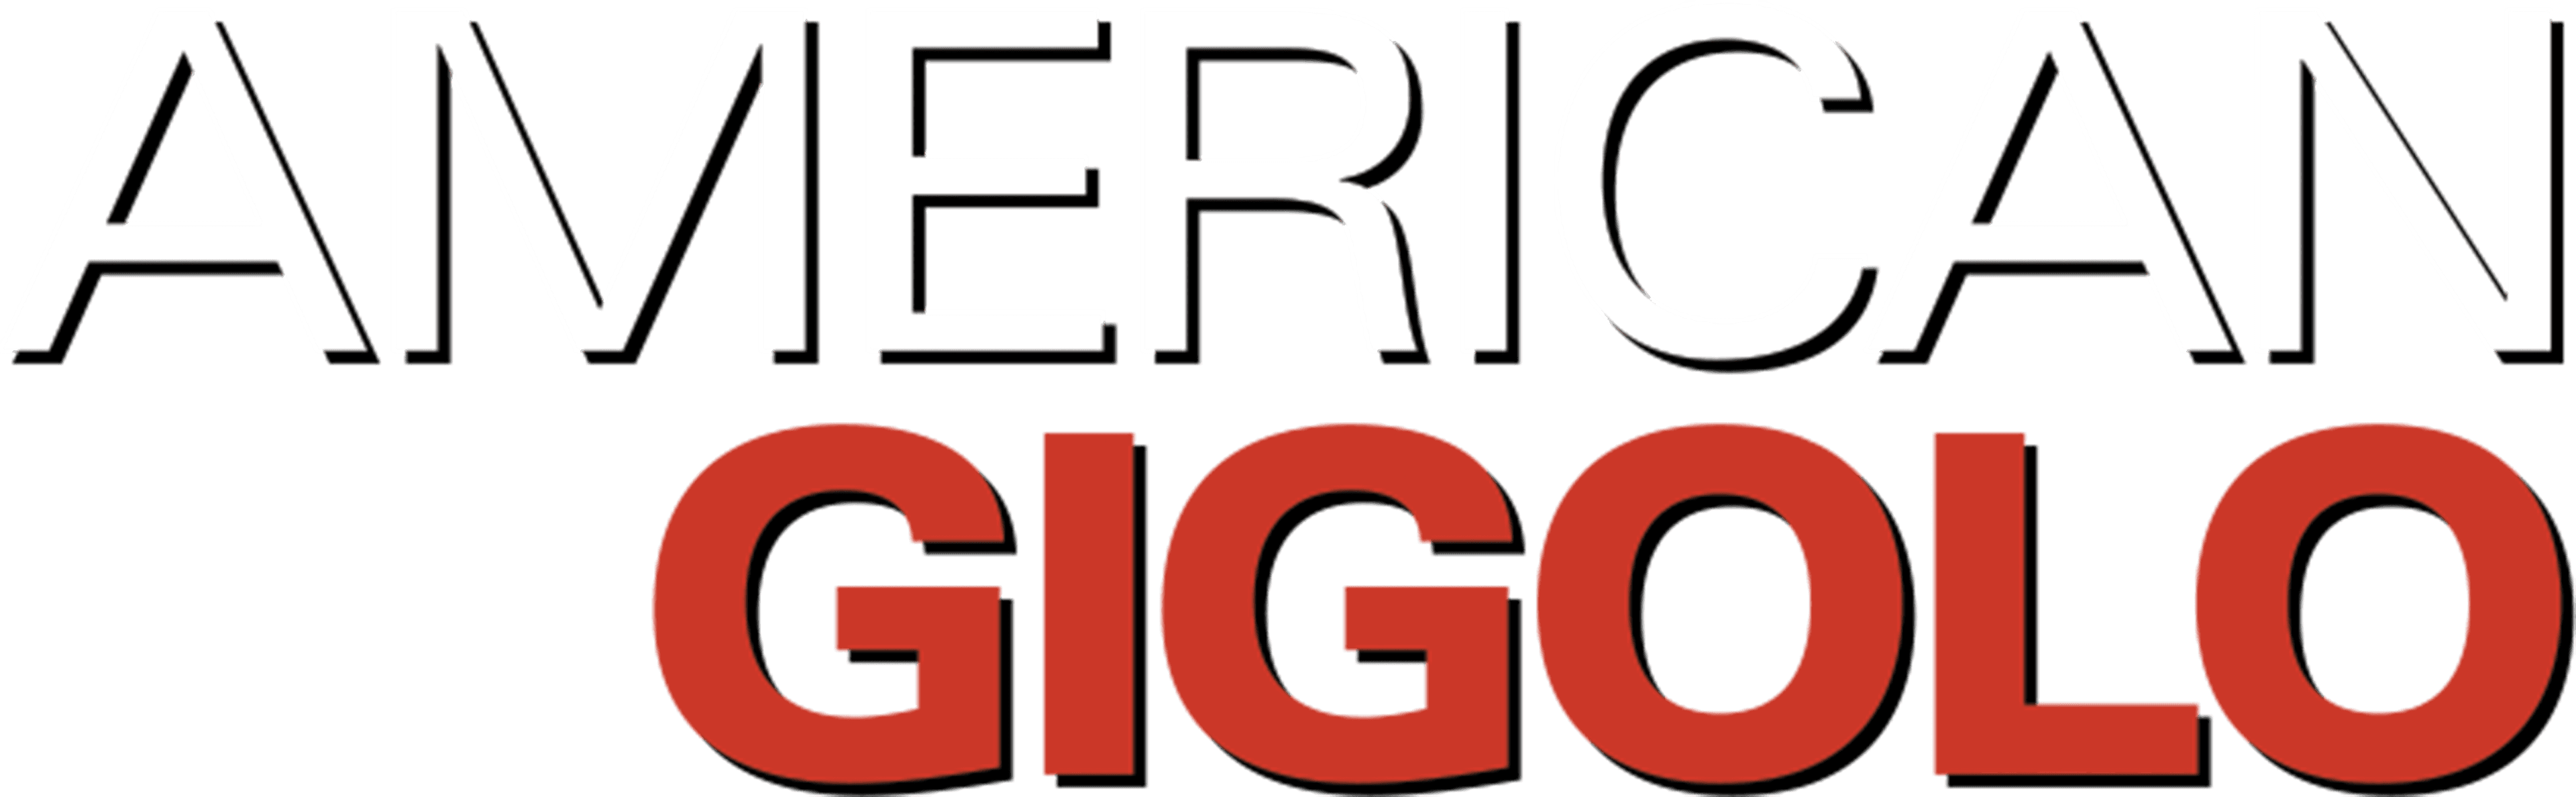 American Gigolo logo